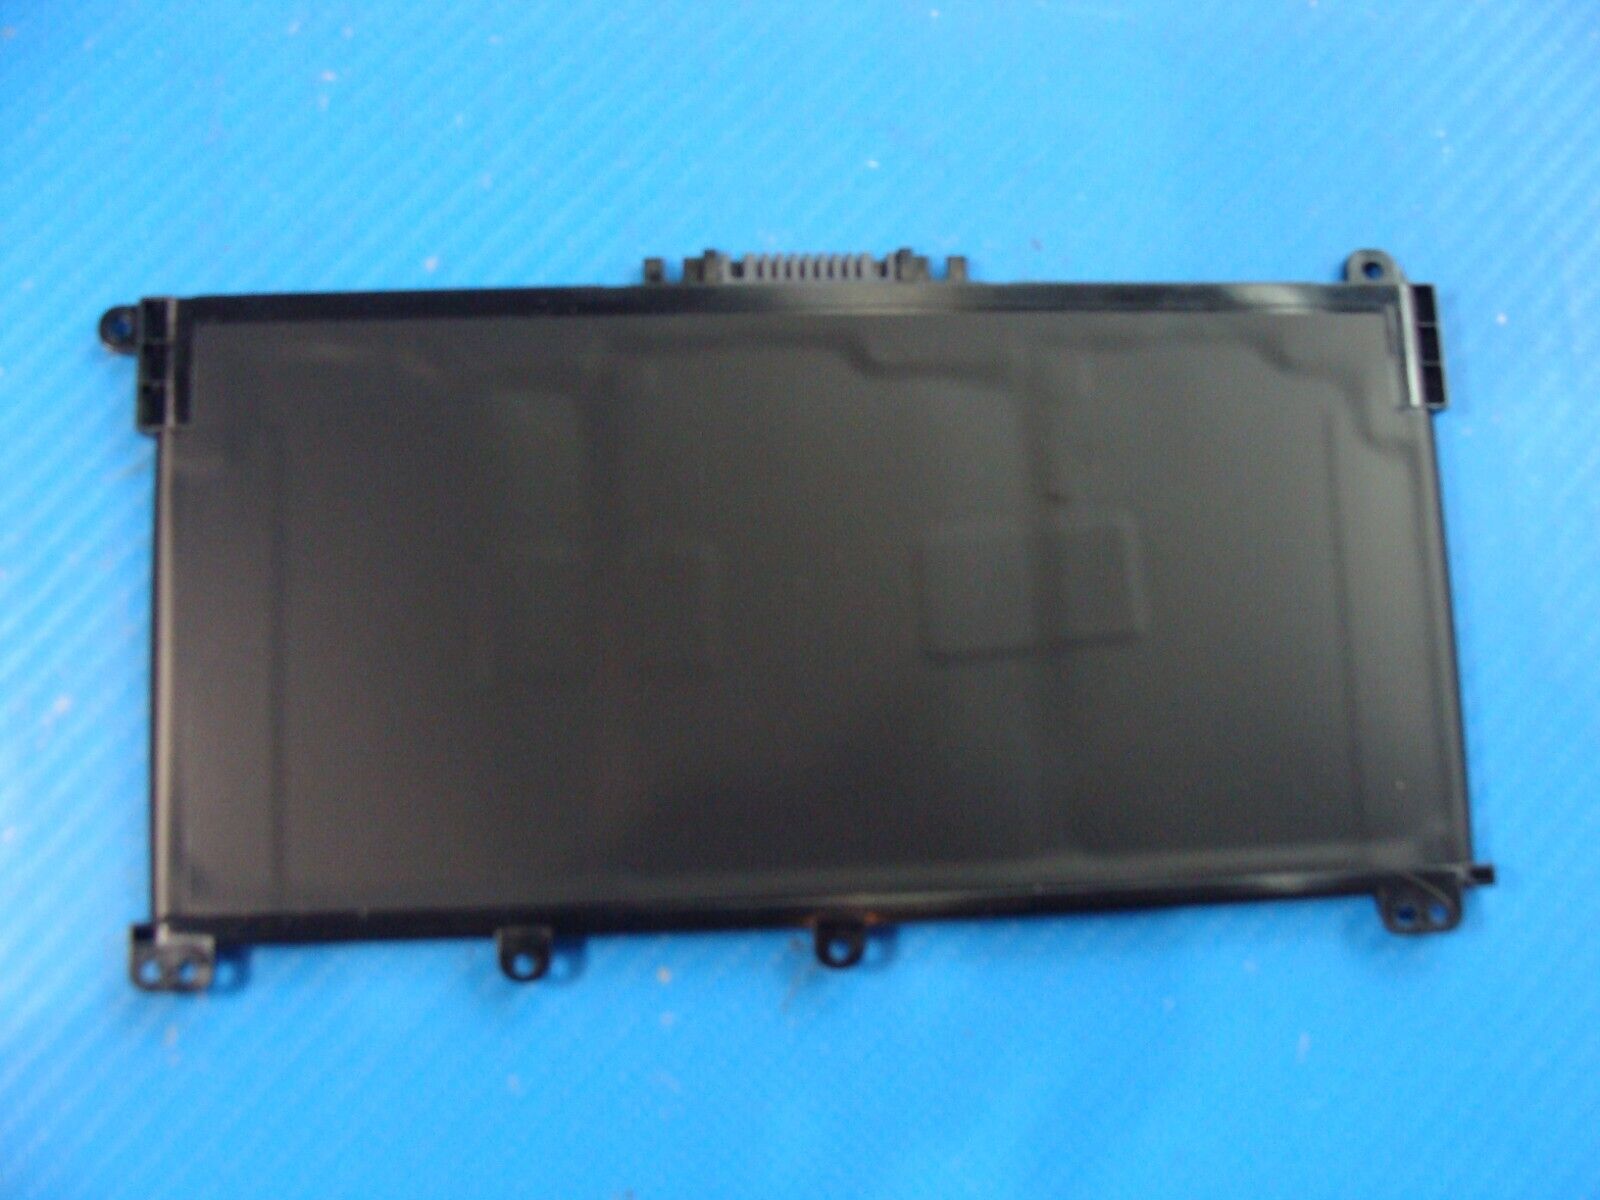 HP 15.6” 15-db0011dx OEM Laptop Battery 11.55V 41.9Wh 3470mAh HT03XL L11119-855